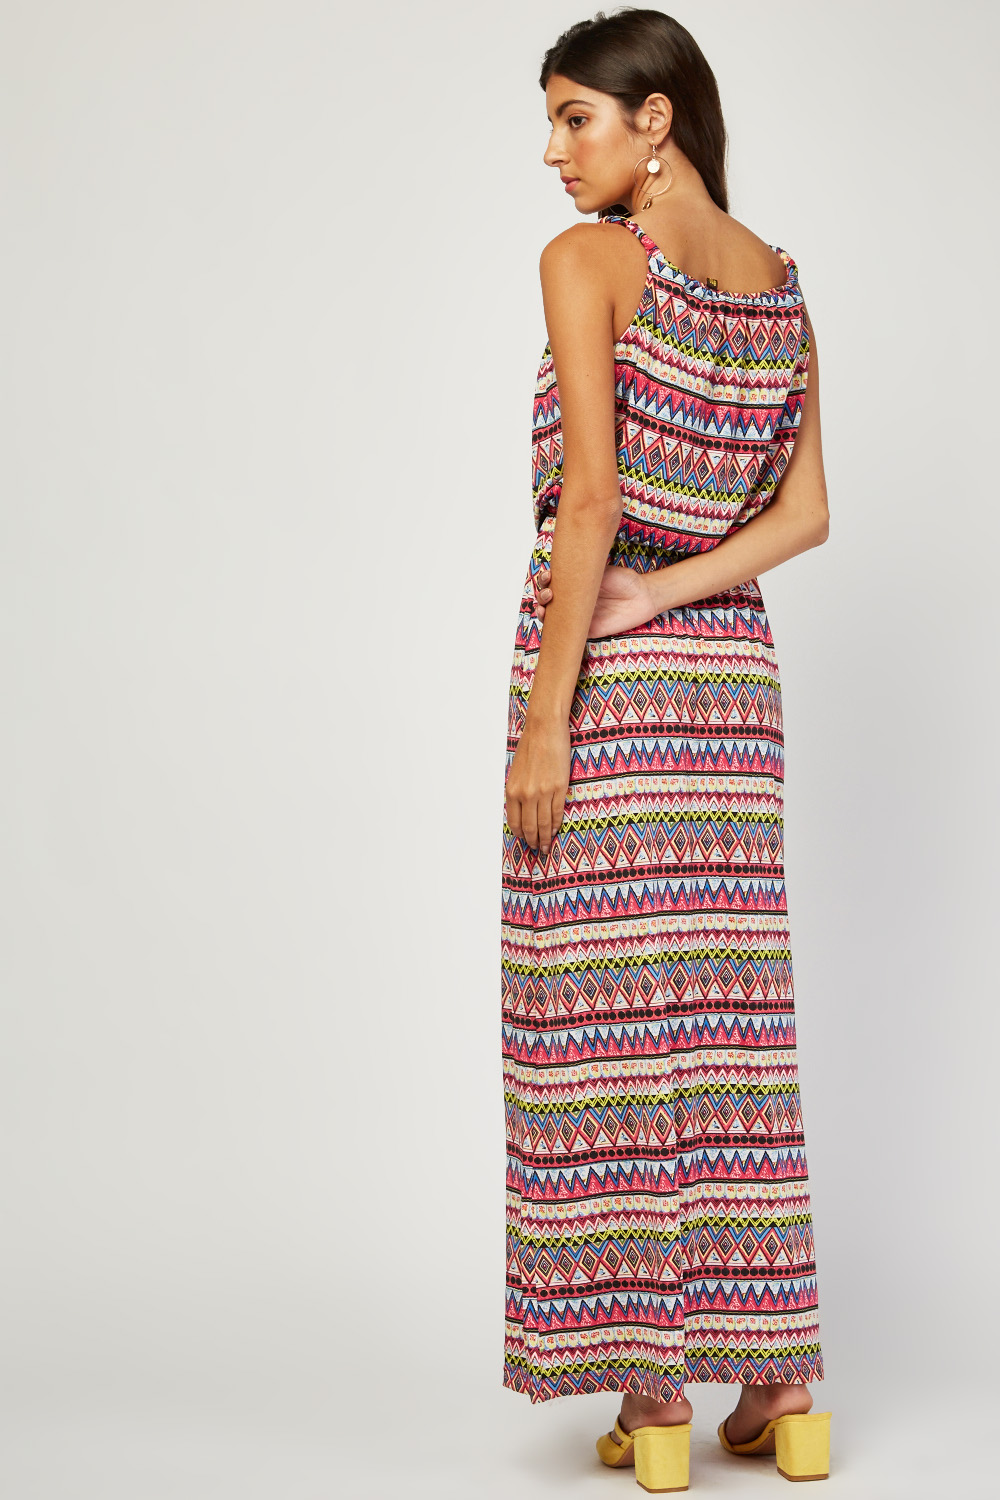 Tribal Aztec Print Maxi Dress - Tique a Bou